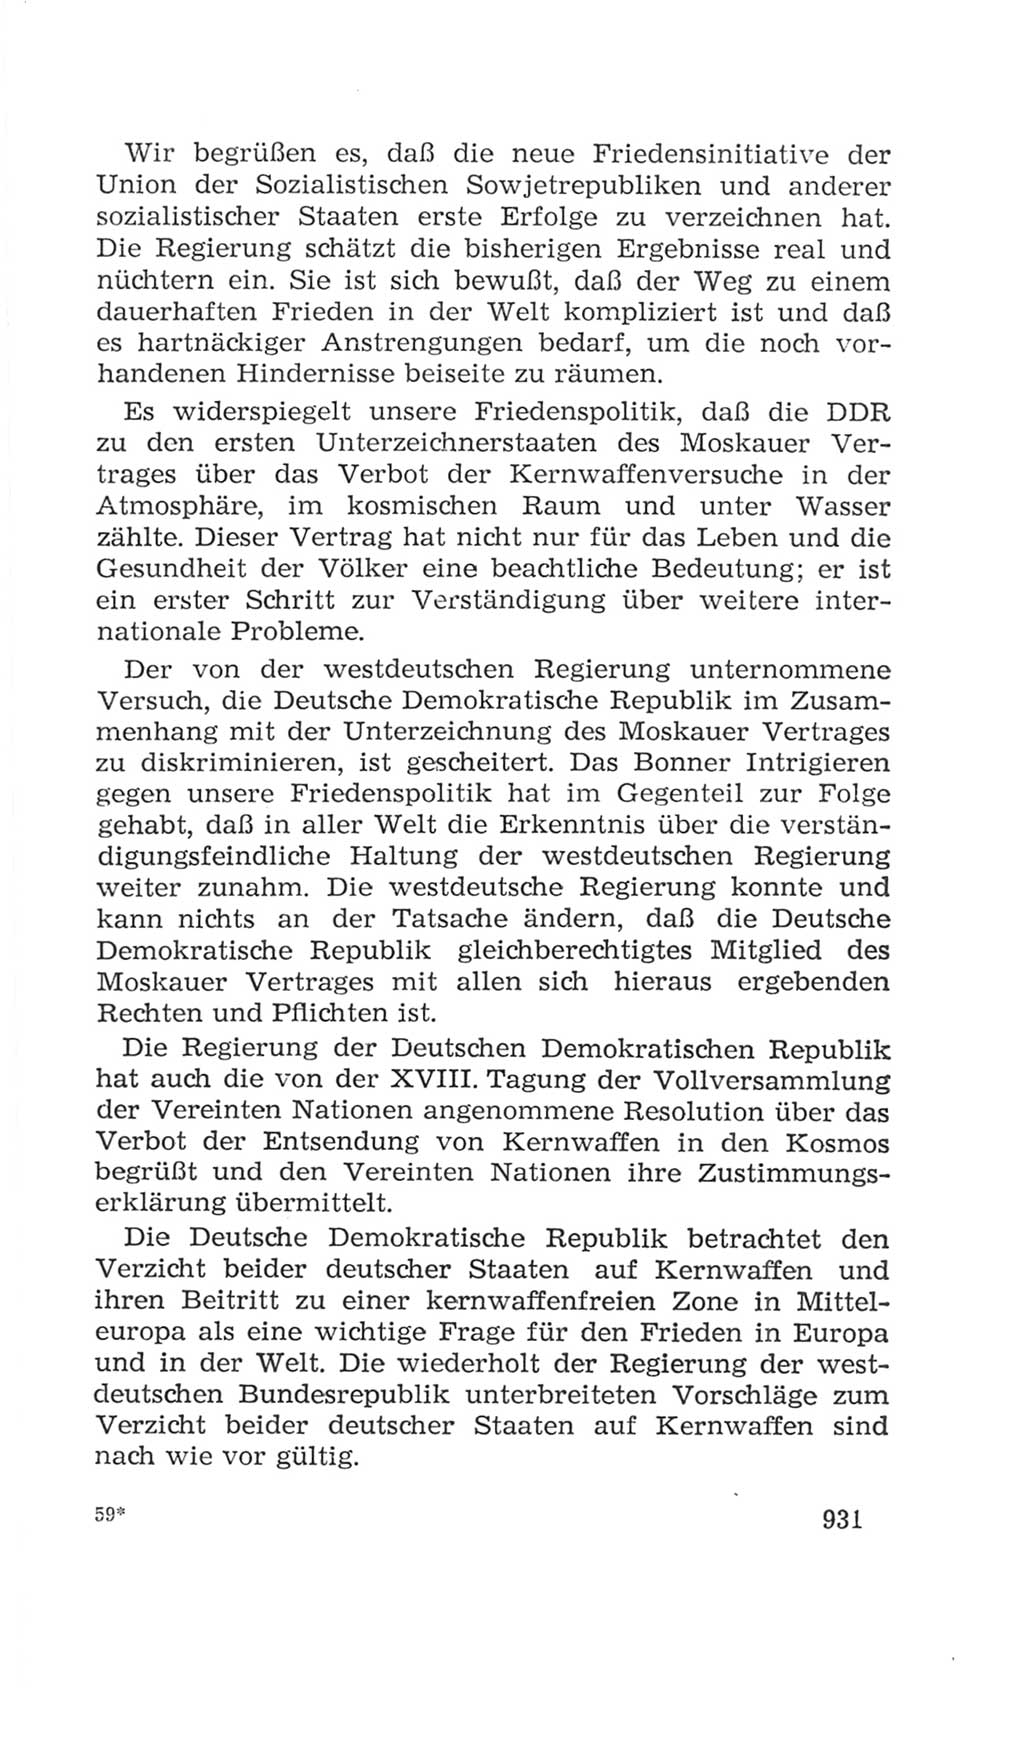 Volkskammer (VK) der Deutschen Demokratischen Republik (DDR), 4. Wahlperiode 1963-1967, Seite 931 (VK. DDR 4. WP. 1963-1967, S. 931)